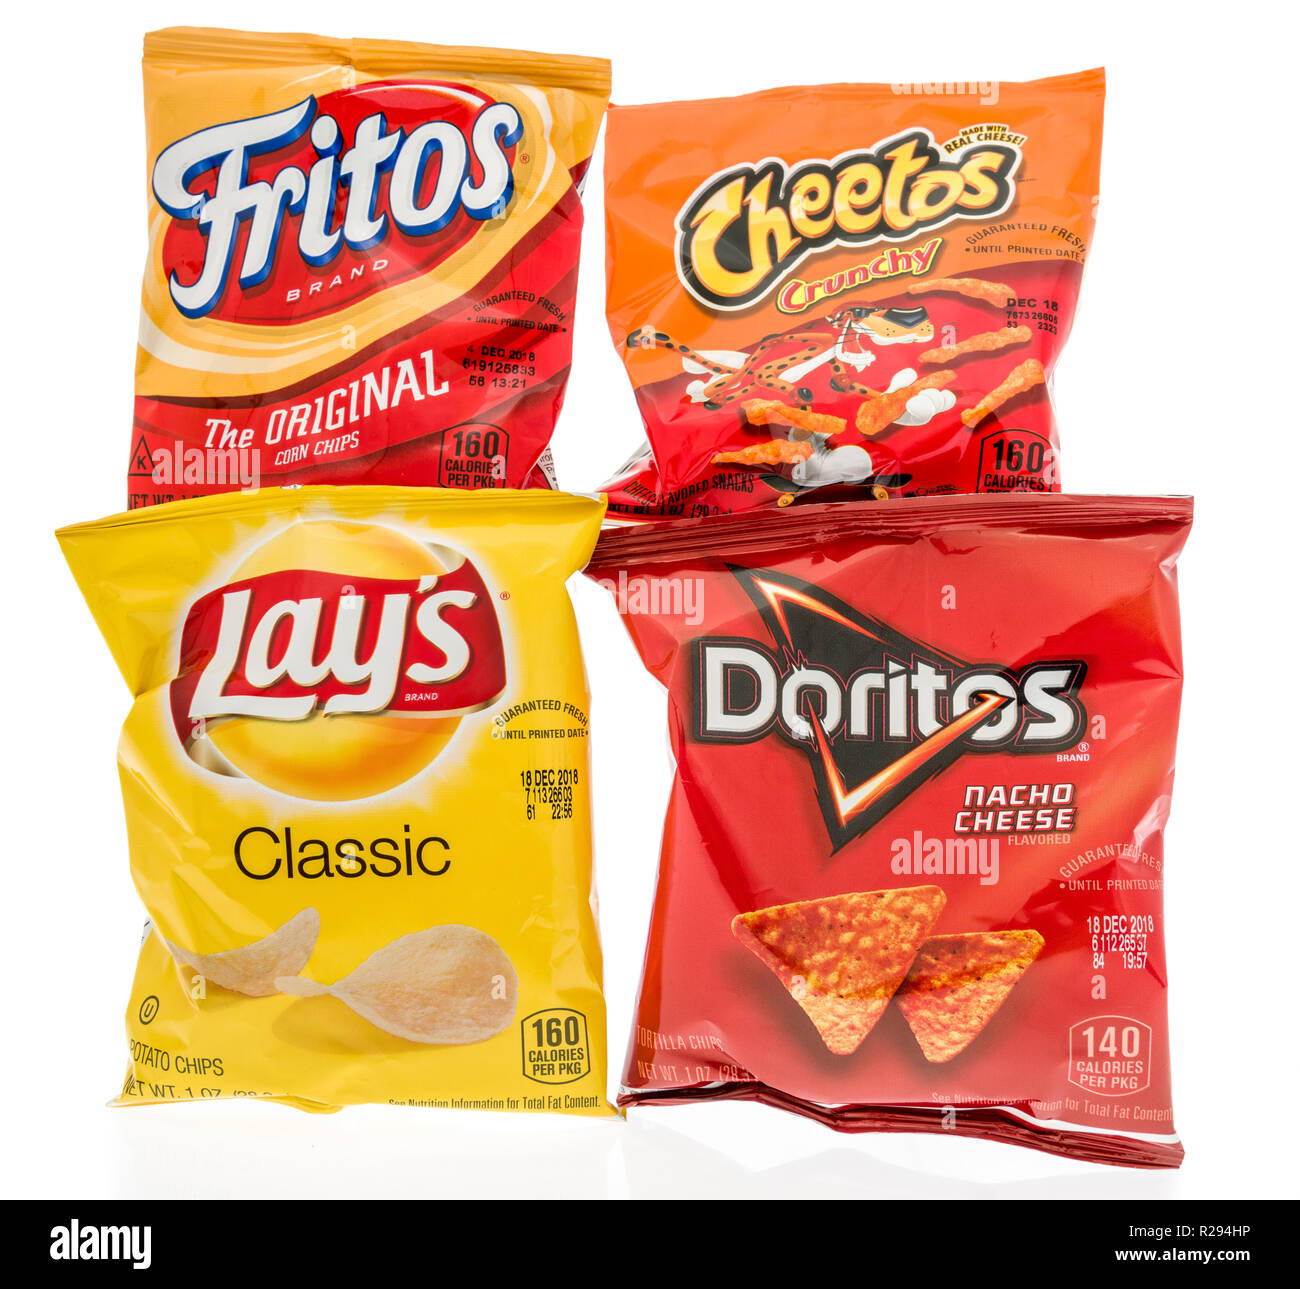 Cheetos doritos hi-res stock photography and images - Alamy